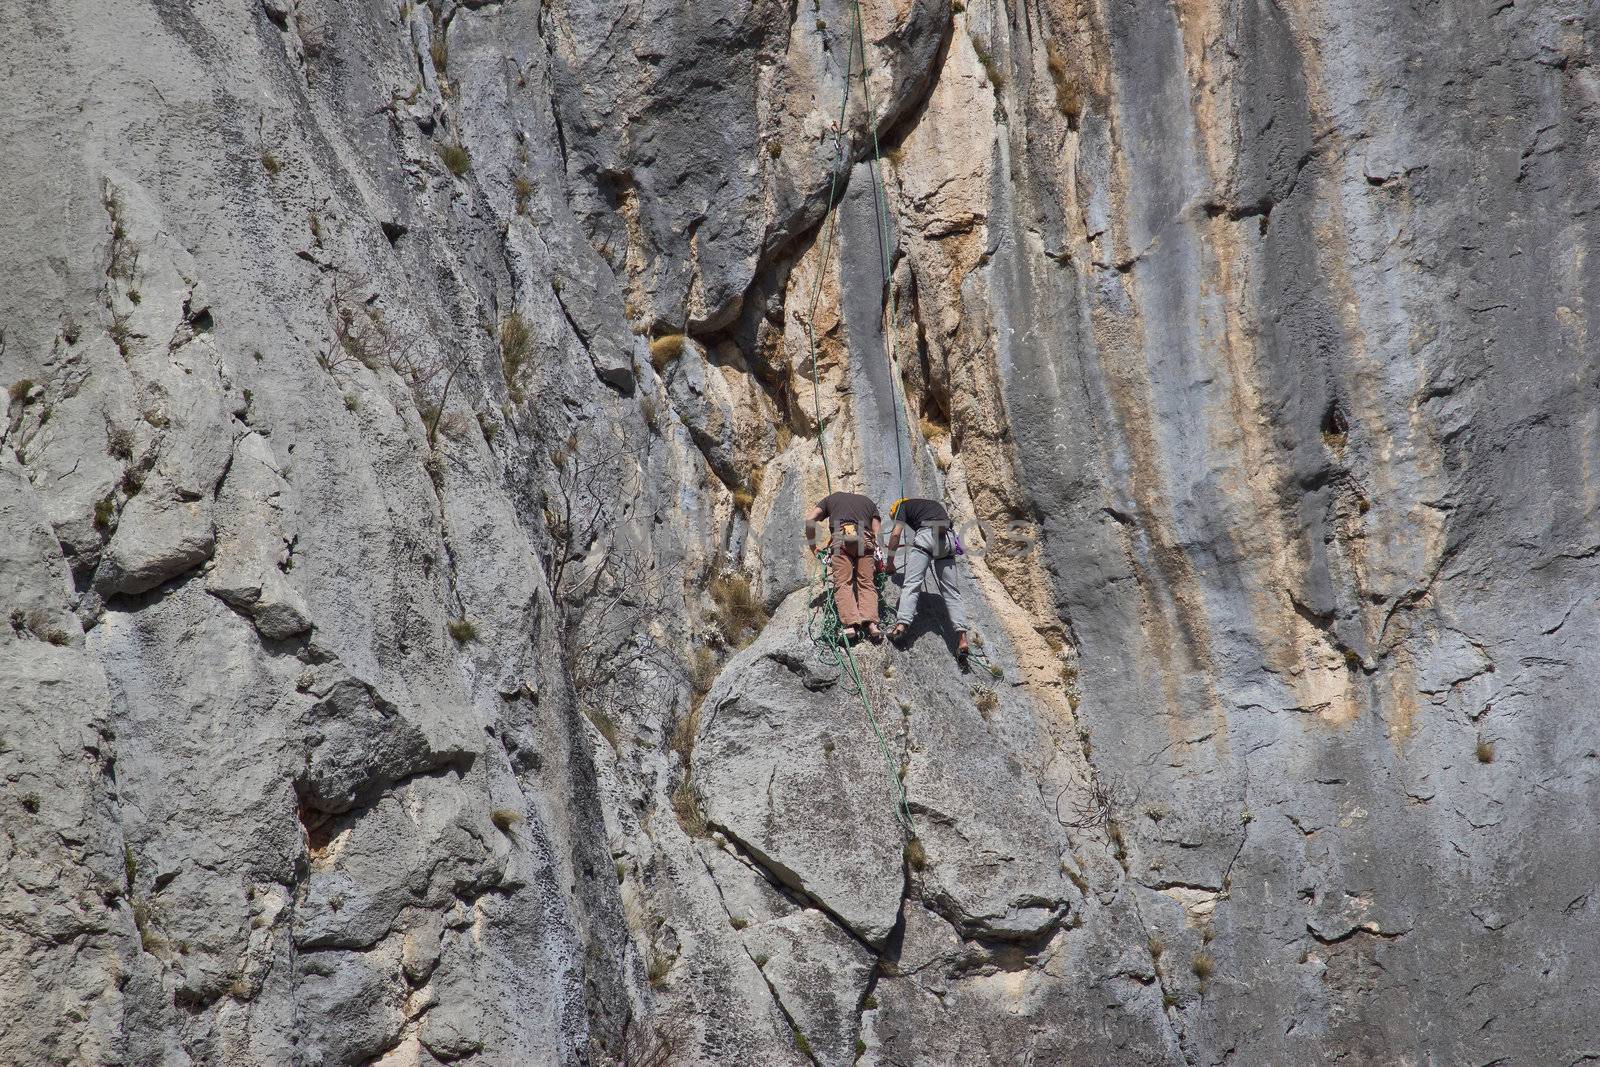 Two rock climbers climbing in Paklenica national park, Velebit mountain, Croatia